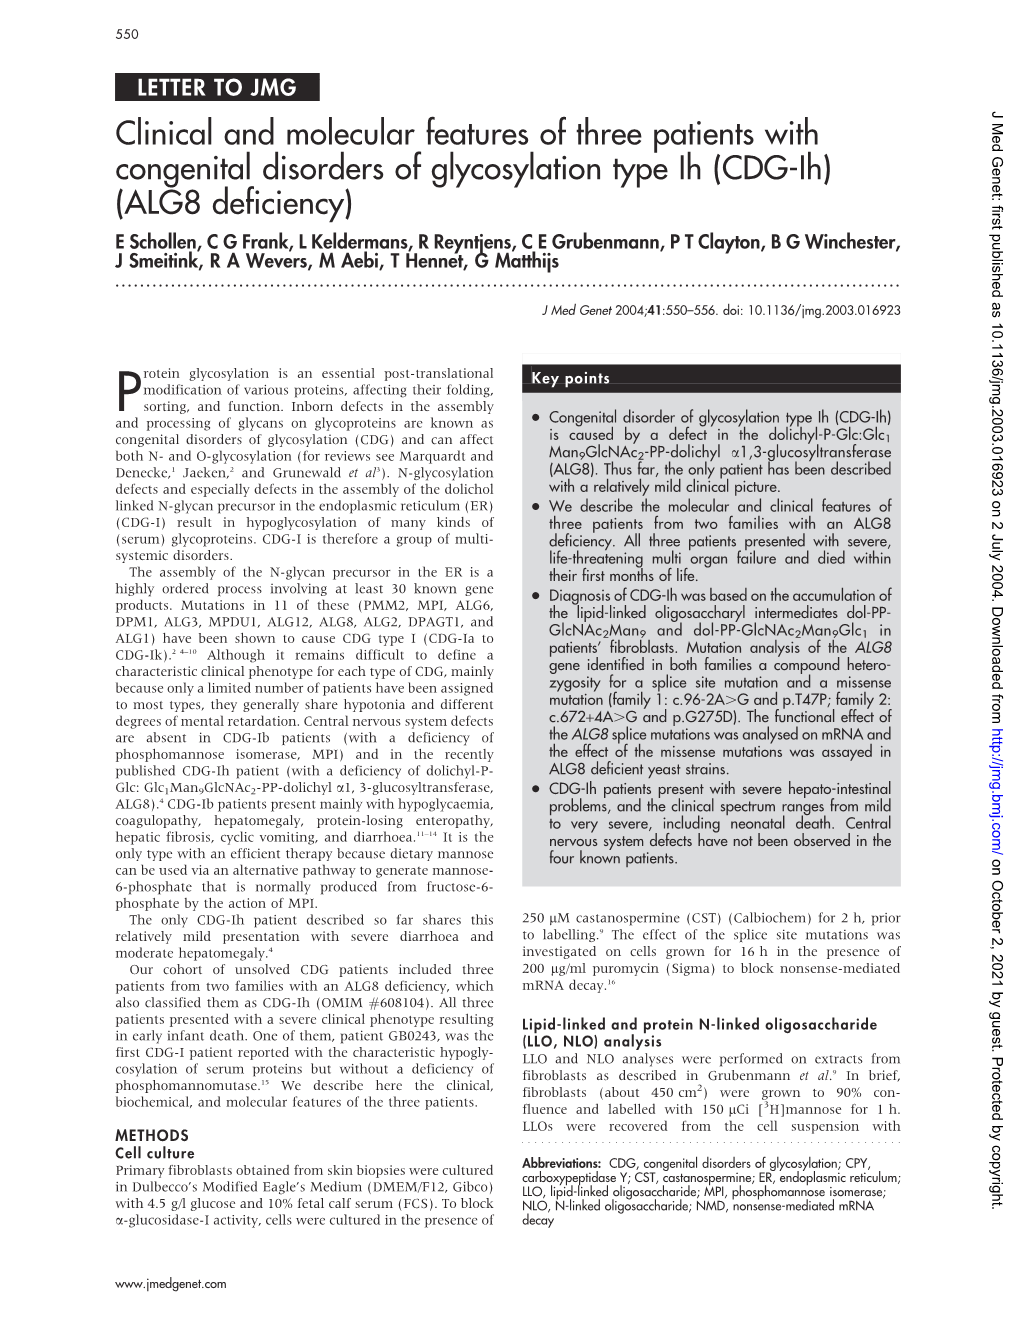 CDG-Ih) (ALG8 Deficiency